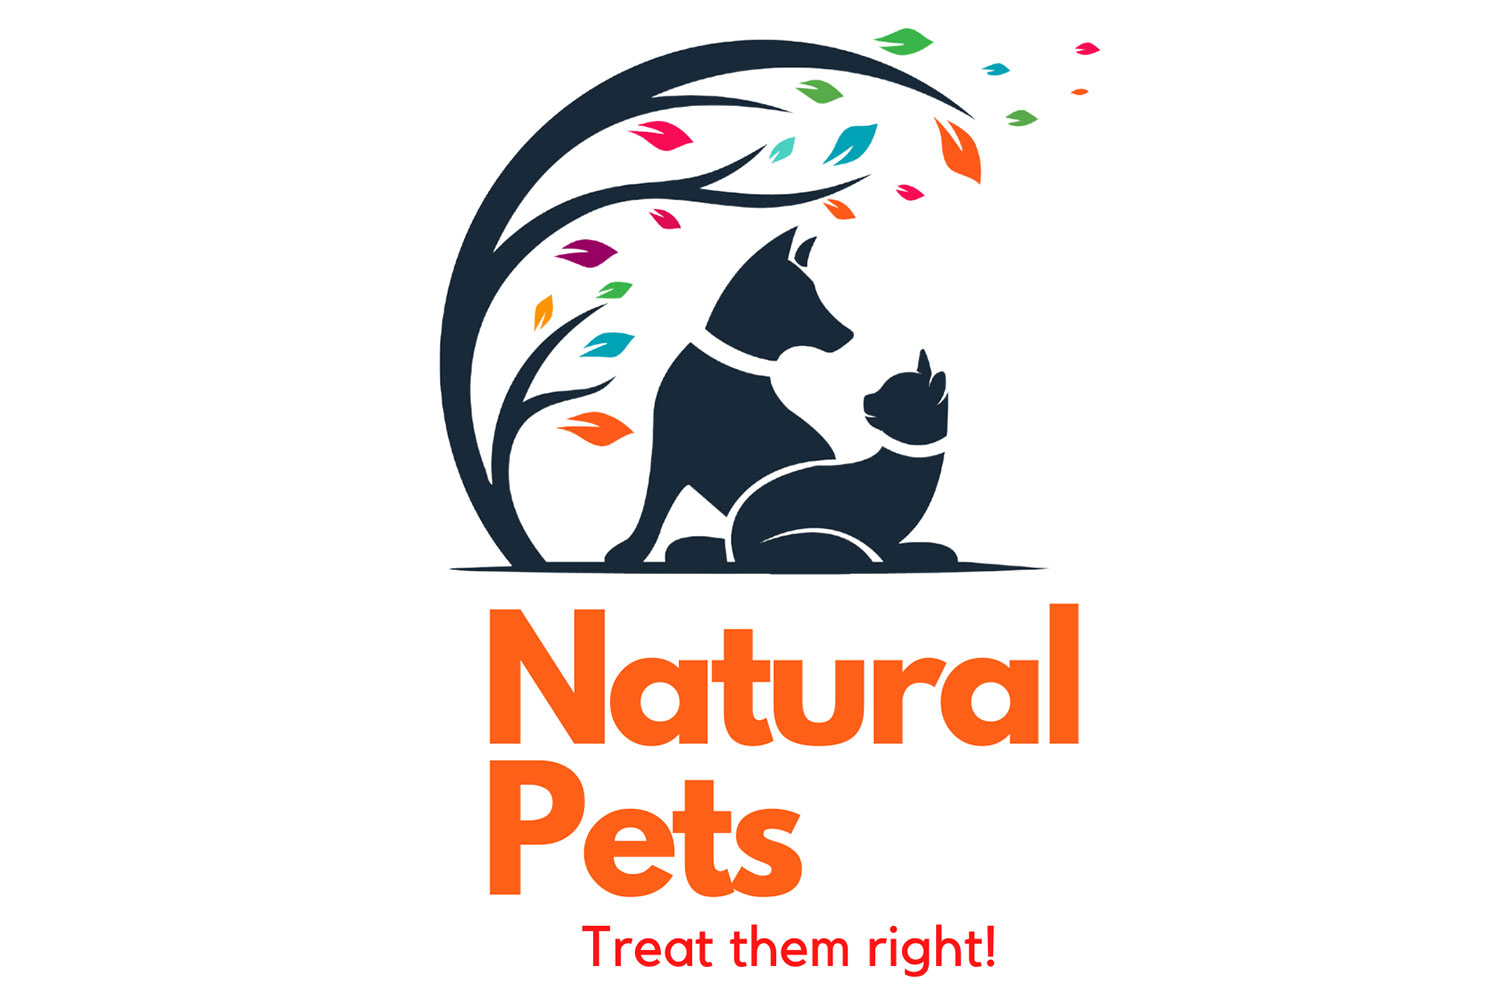 Natural Pets